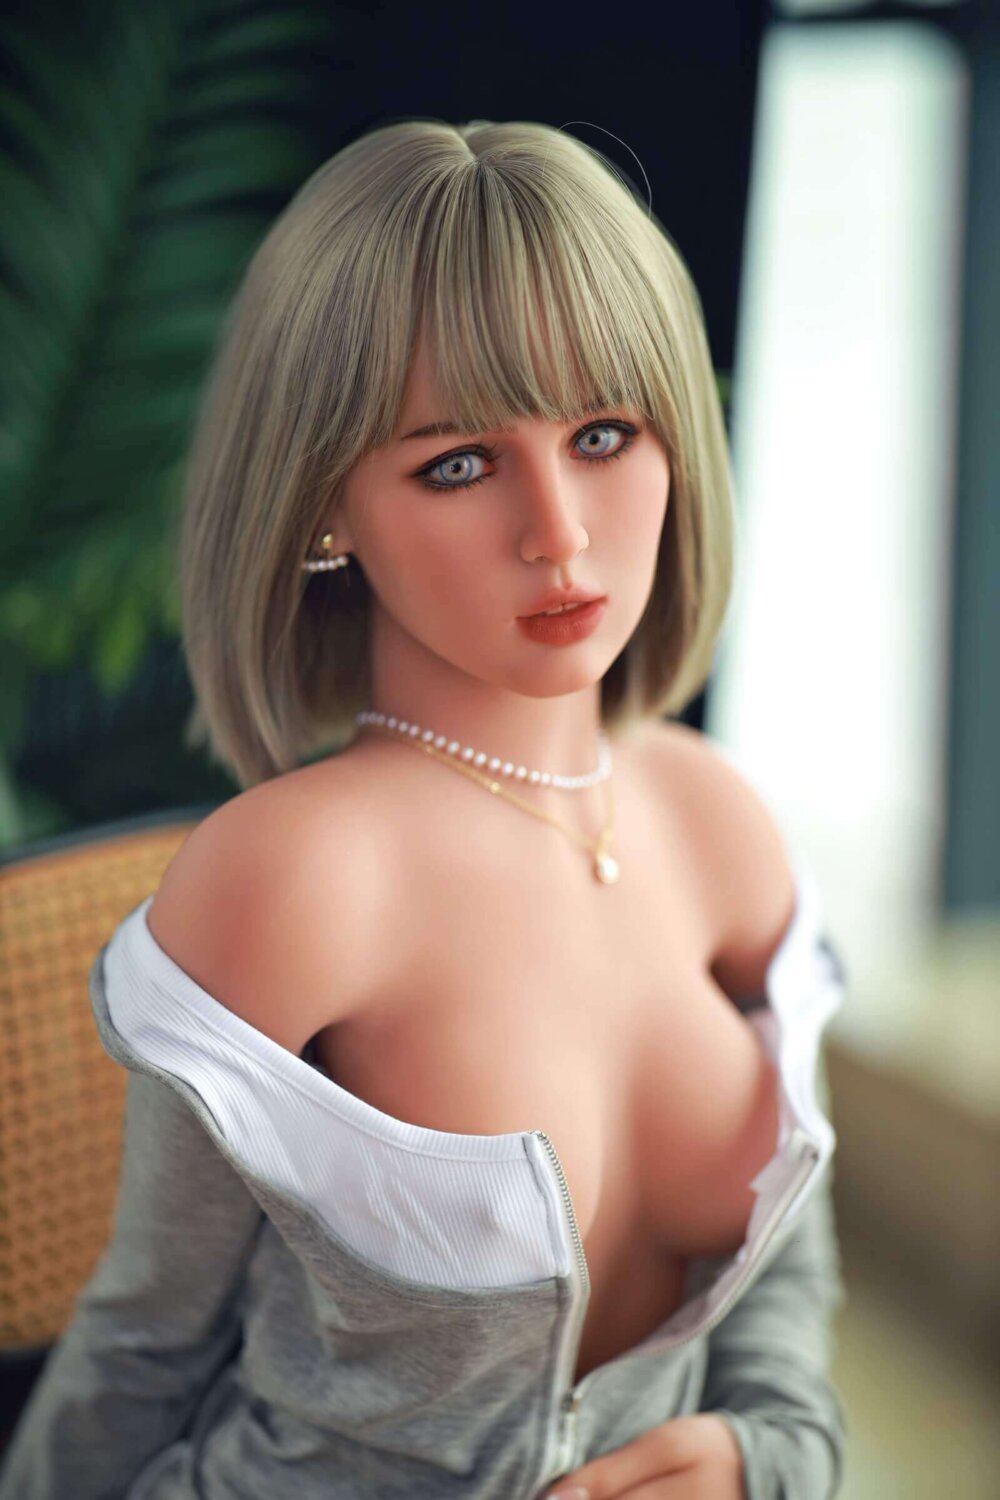 Sex Doll blondynka z grzywką, szara bluza z piersiami, naszyjnik i kolczyki w perły, niebieskie oczy.